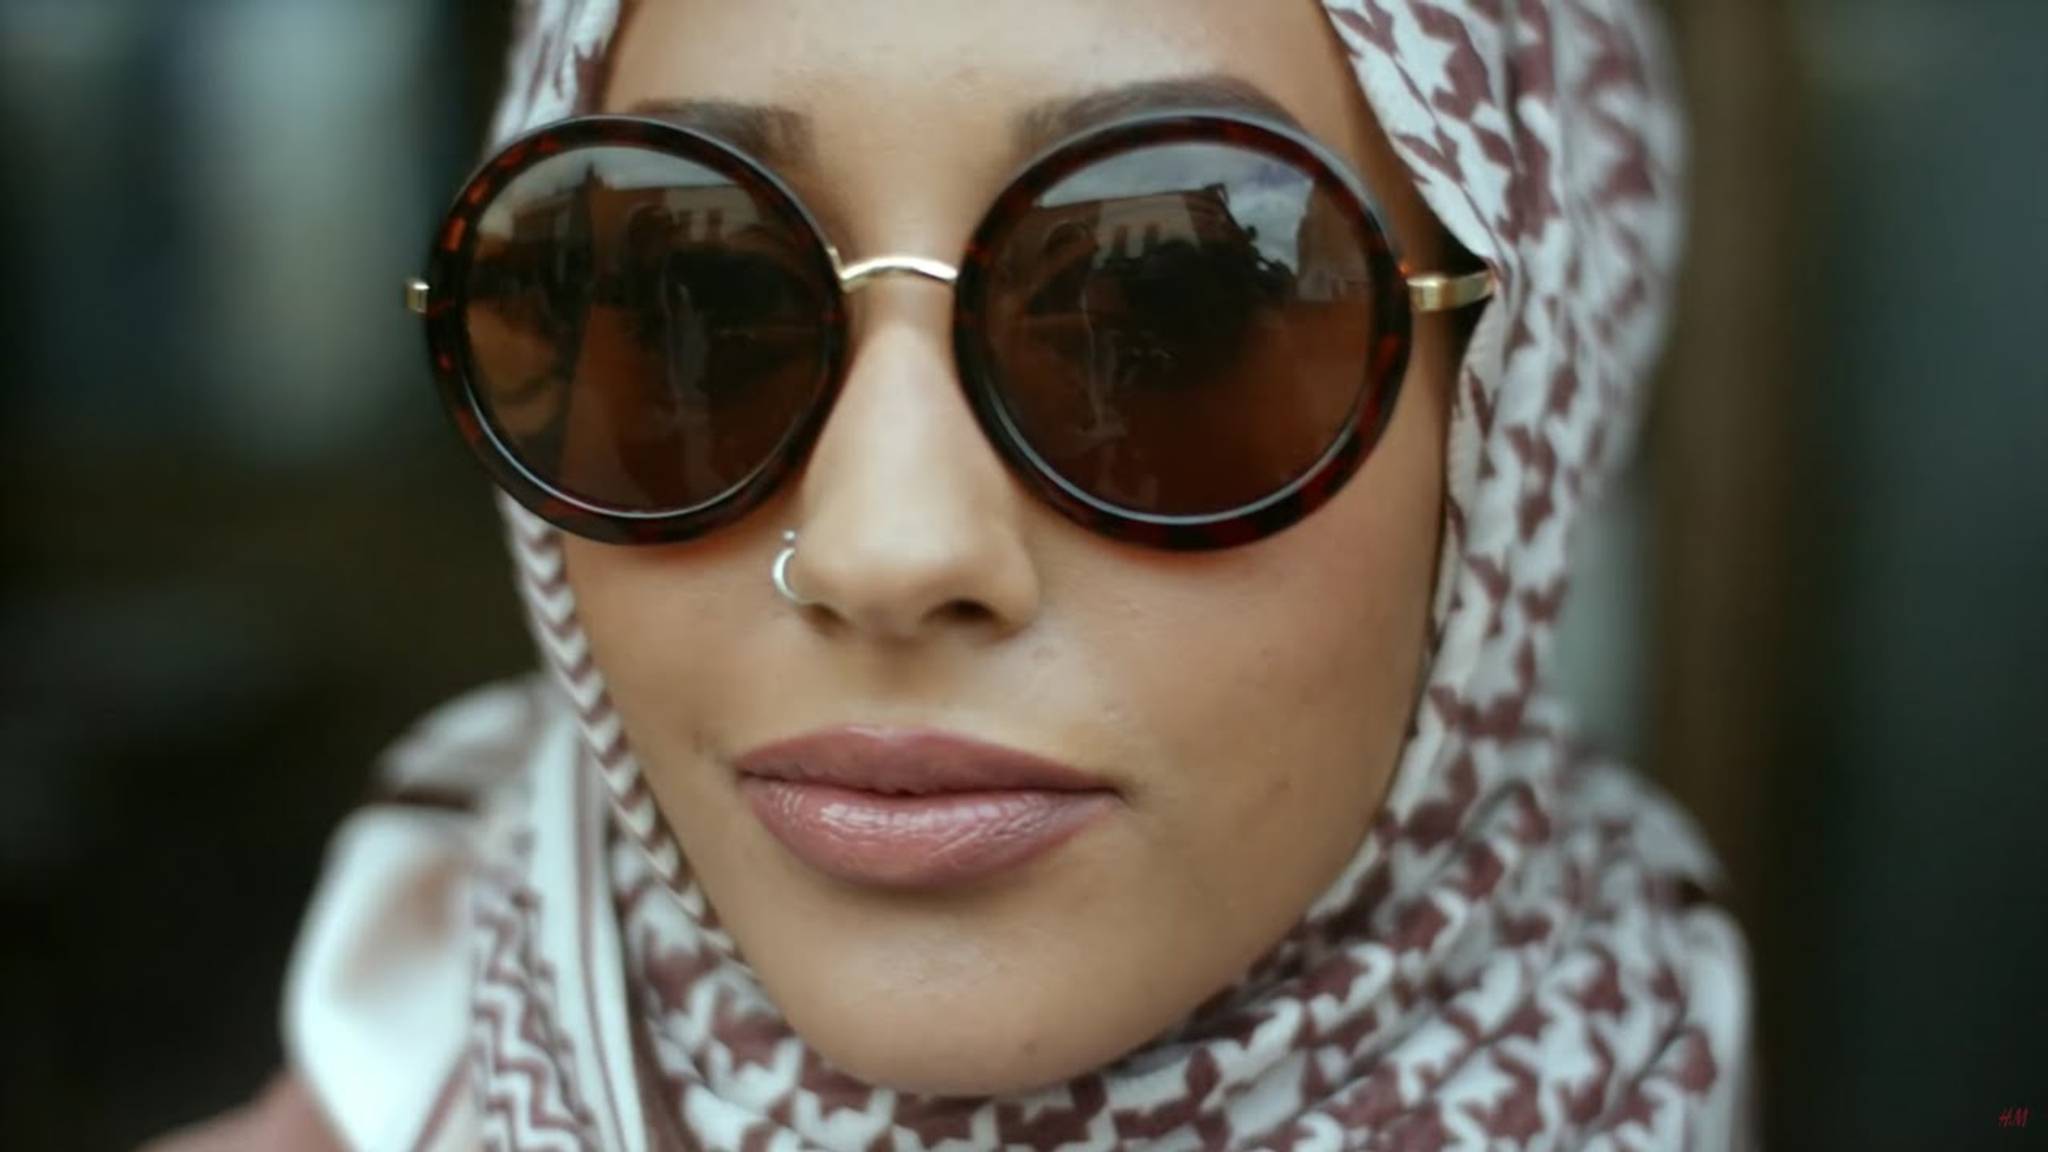 Amaliah offers Muslim girls modest fashion